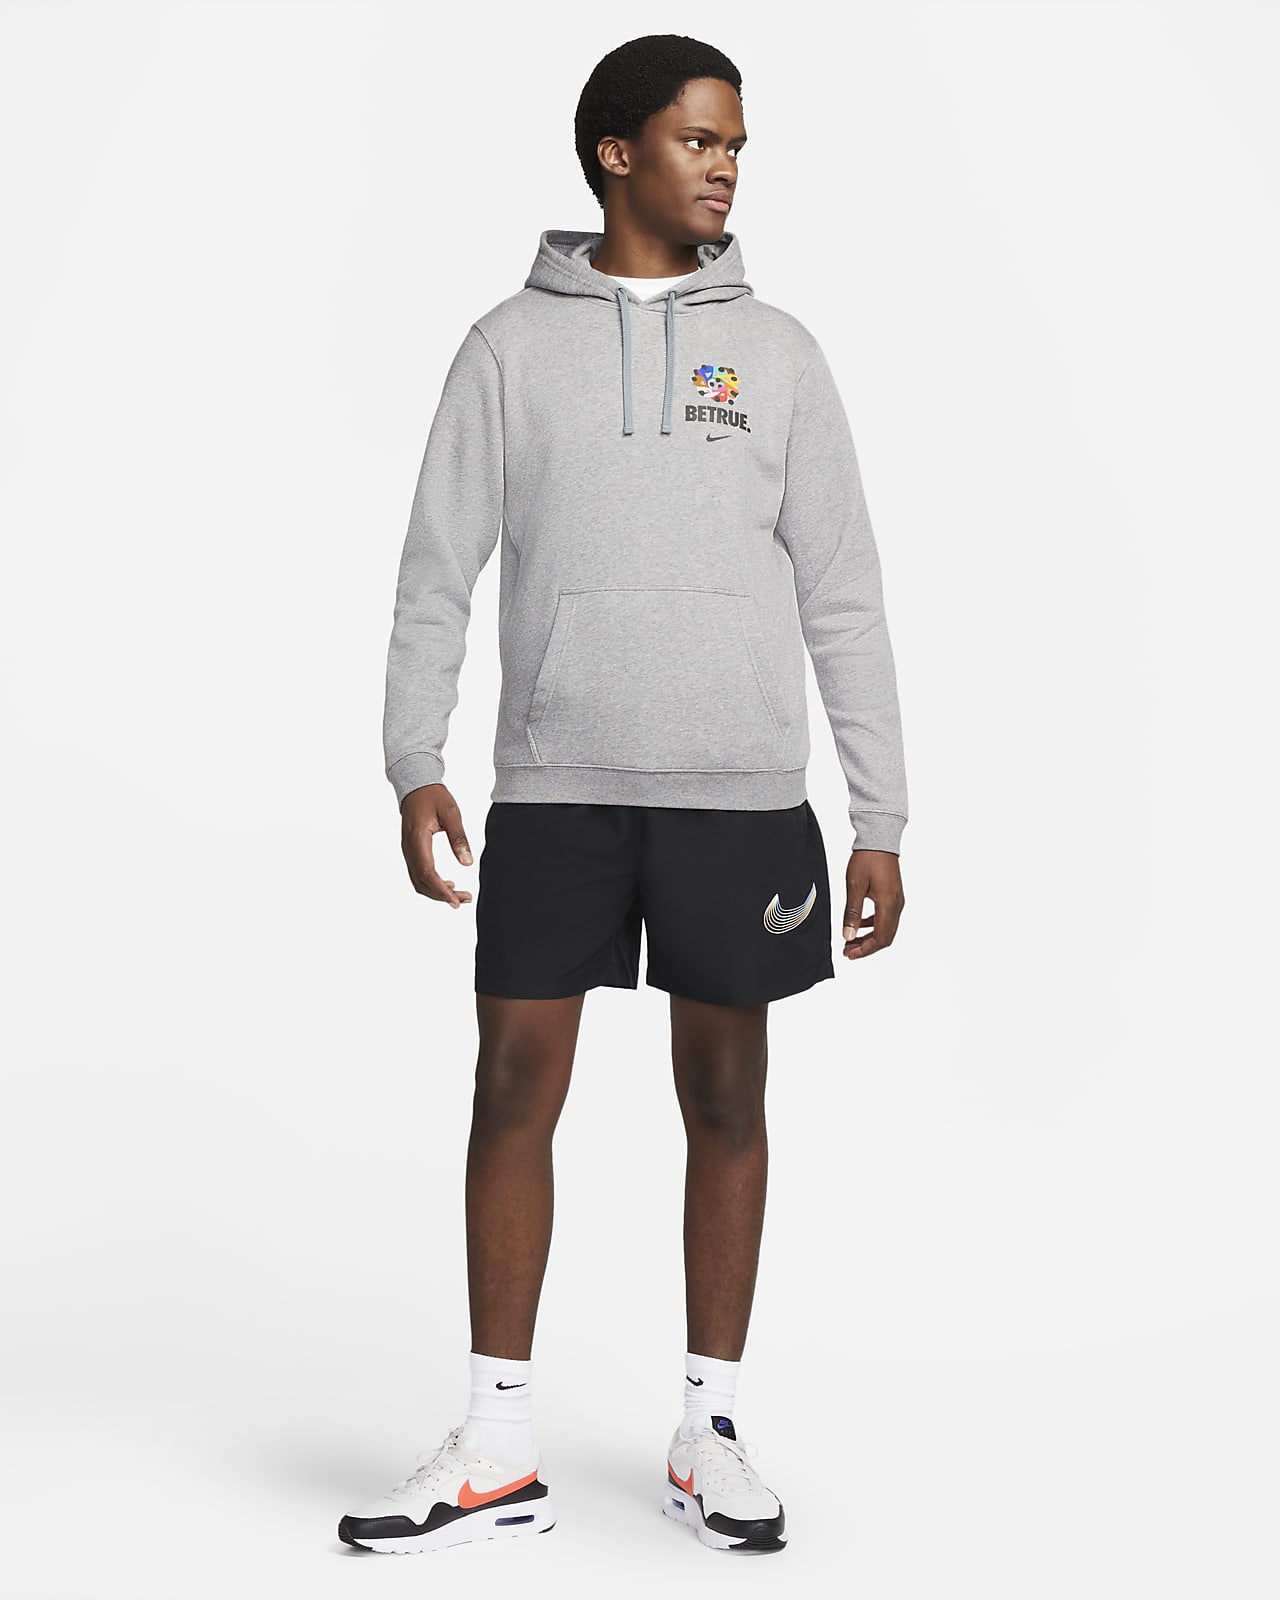 Nike Sportswear BeTrue Men's Pullover Hoodie